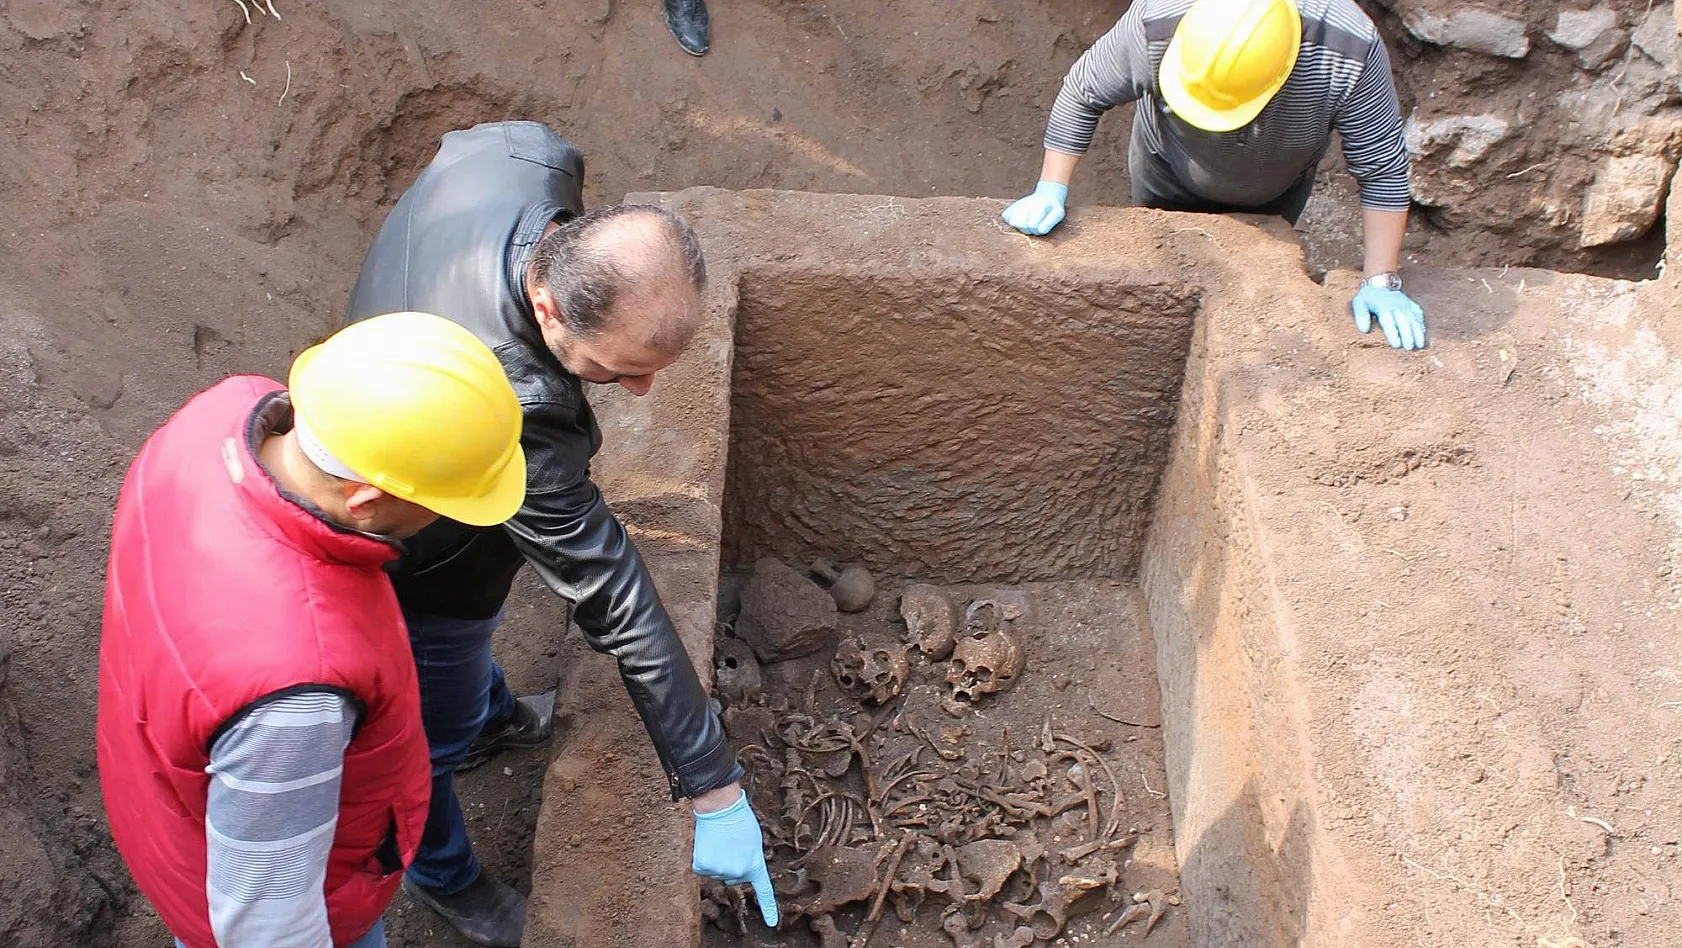 Kayseri'de bulunan lahitten insan kemikleri, kafatasları, gözyaşı şişesi ve bilezik çıktı